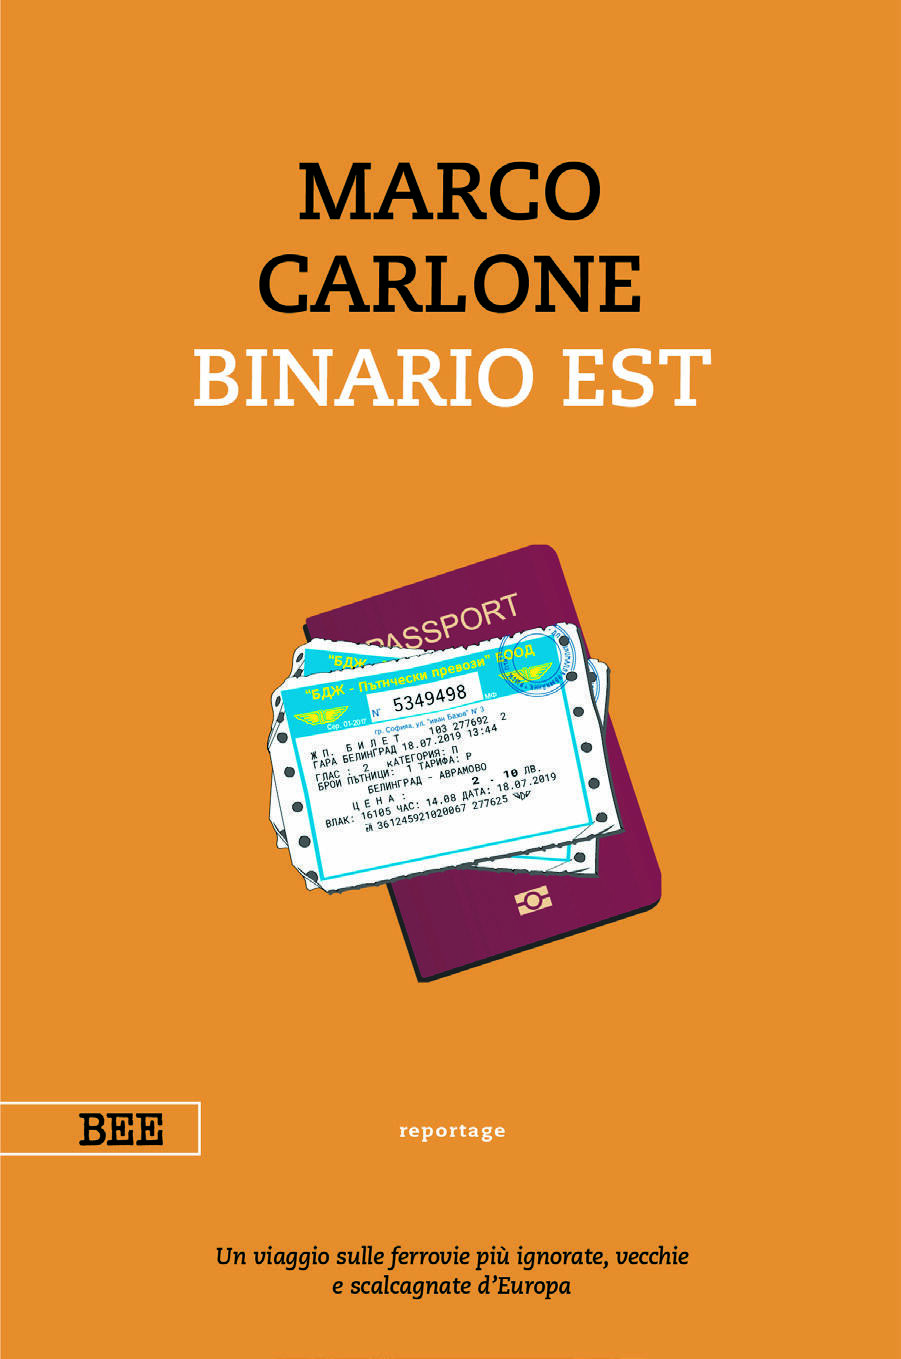 Presentazione del libro “BINARIO EST” di Marco Carlone a Savigliano